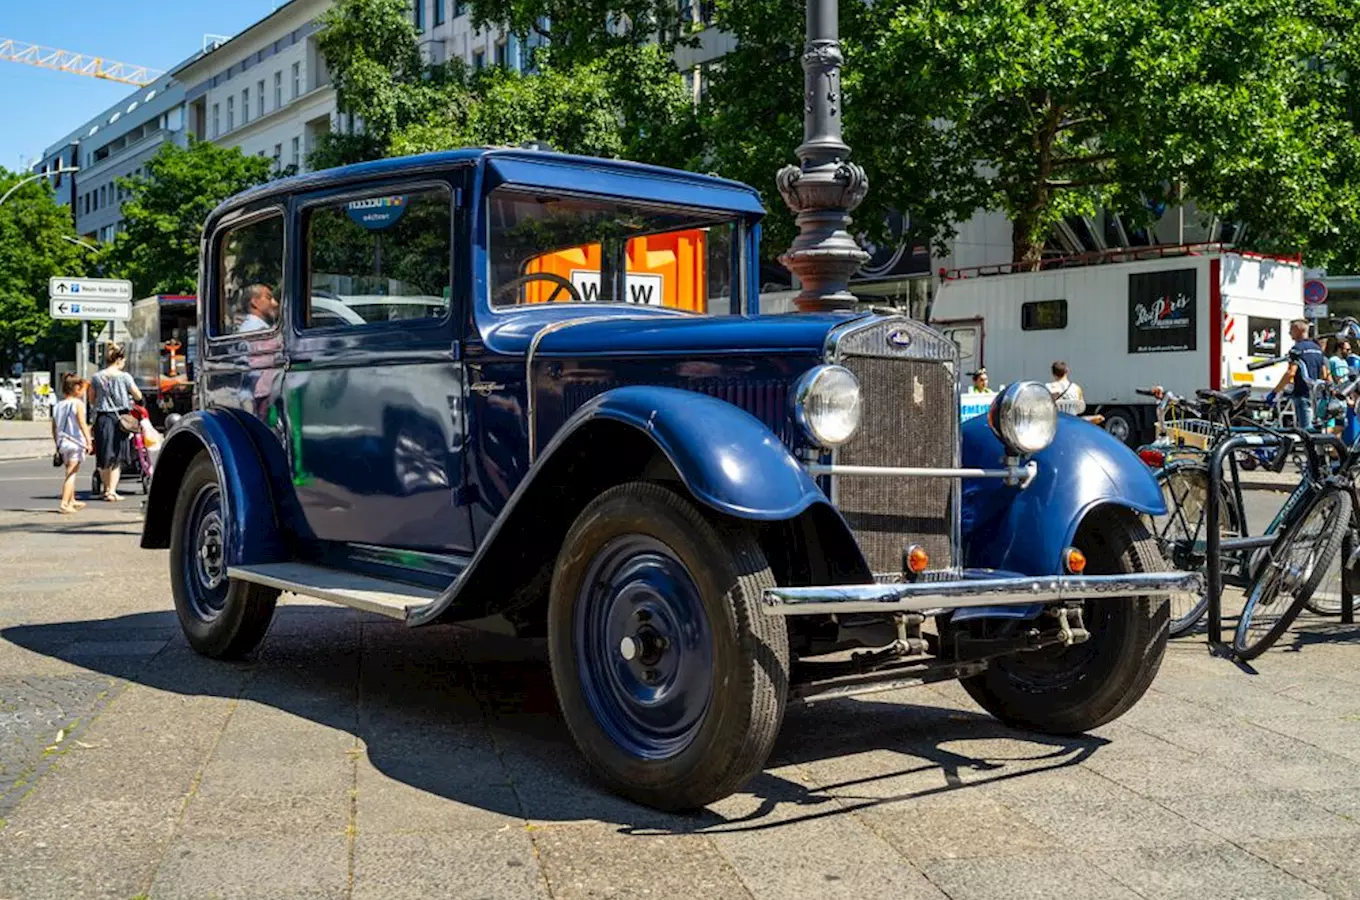 Dnes uplyne 150 let od narození Václava Klementa, spoluzakladatele slavné automobilky